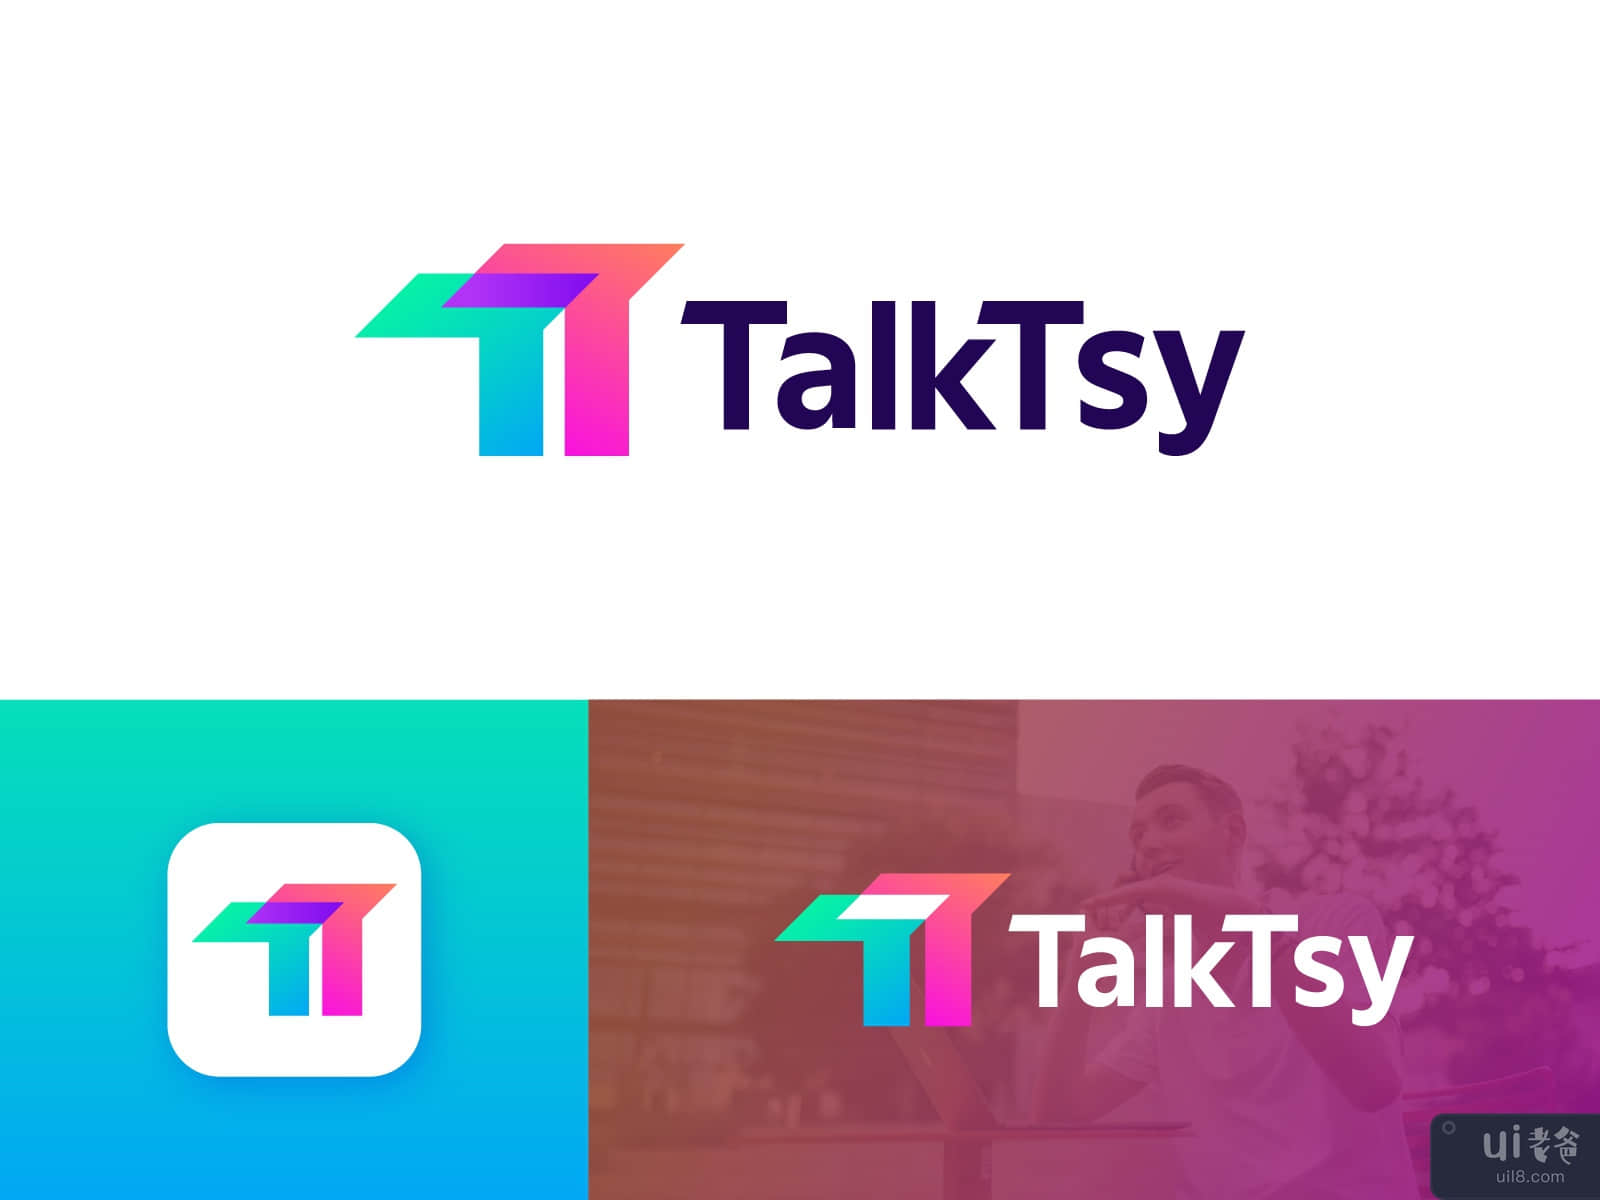 TalkTsy logo and branding design